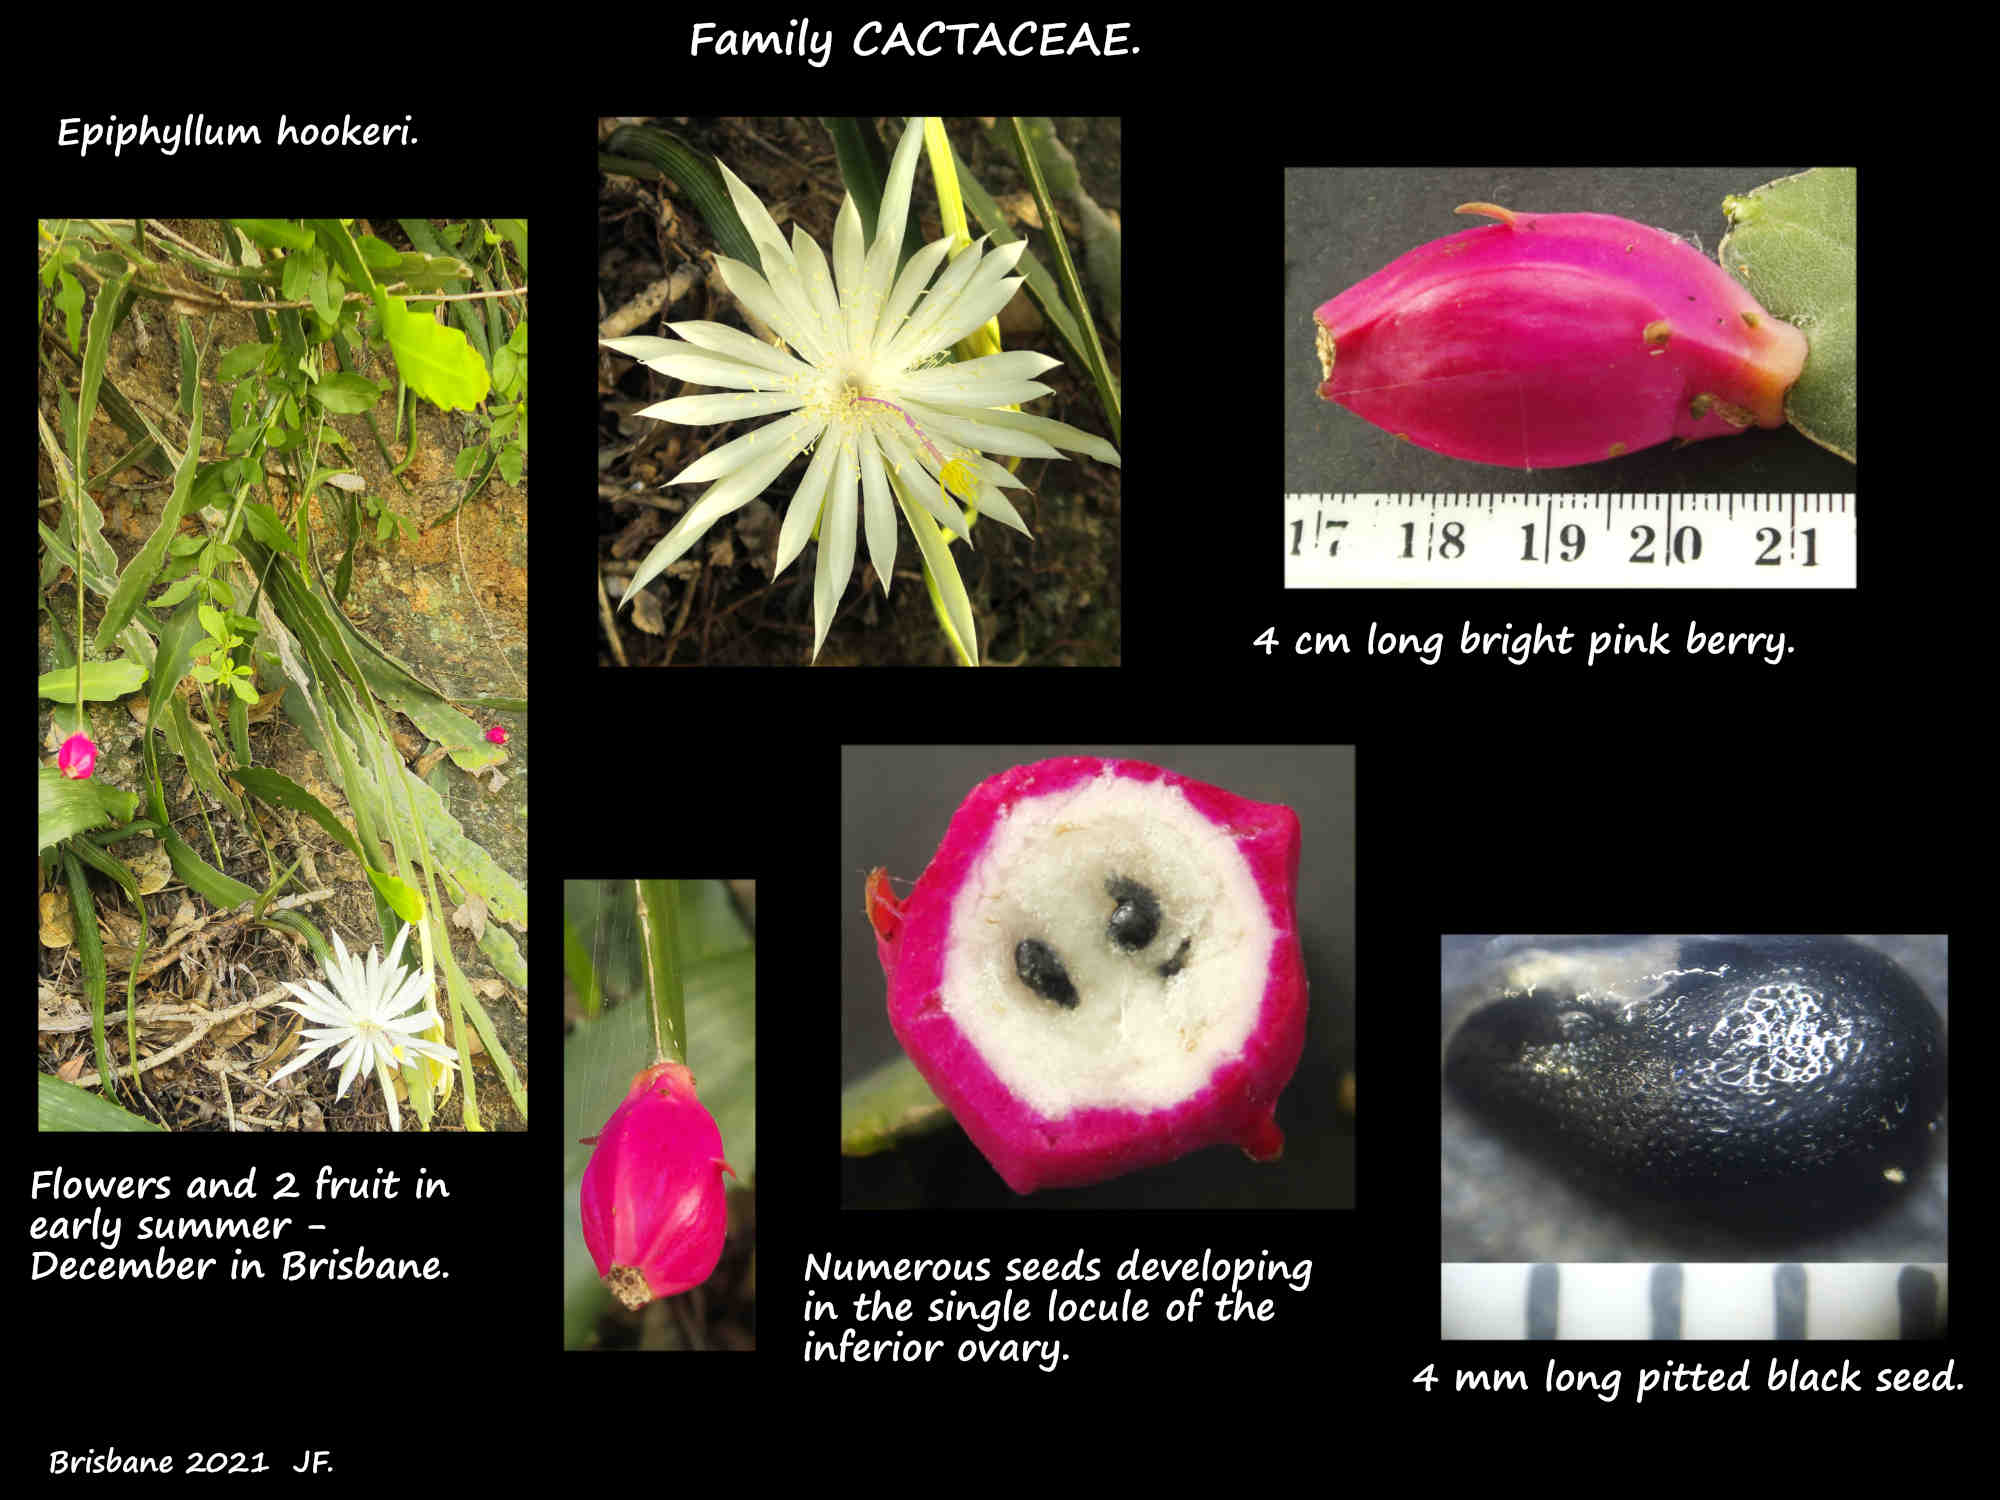 6b Fruit & seeds of Epiphyllum hookeri